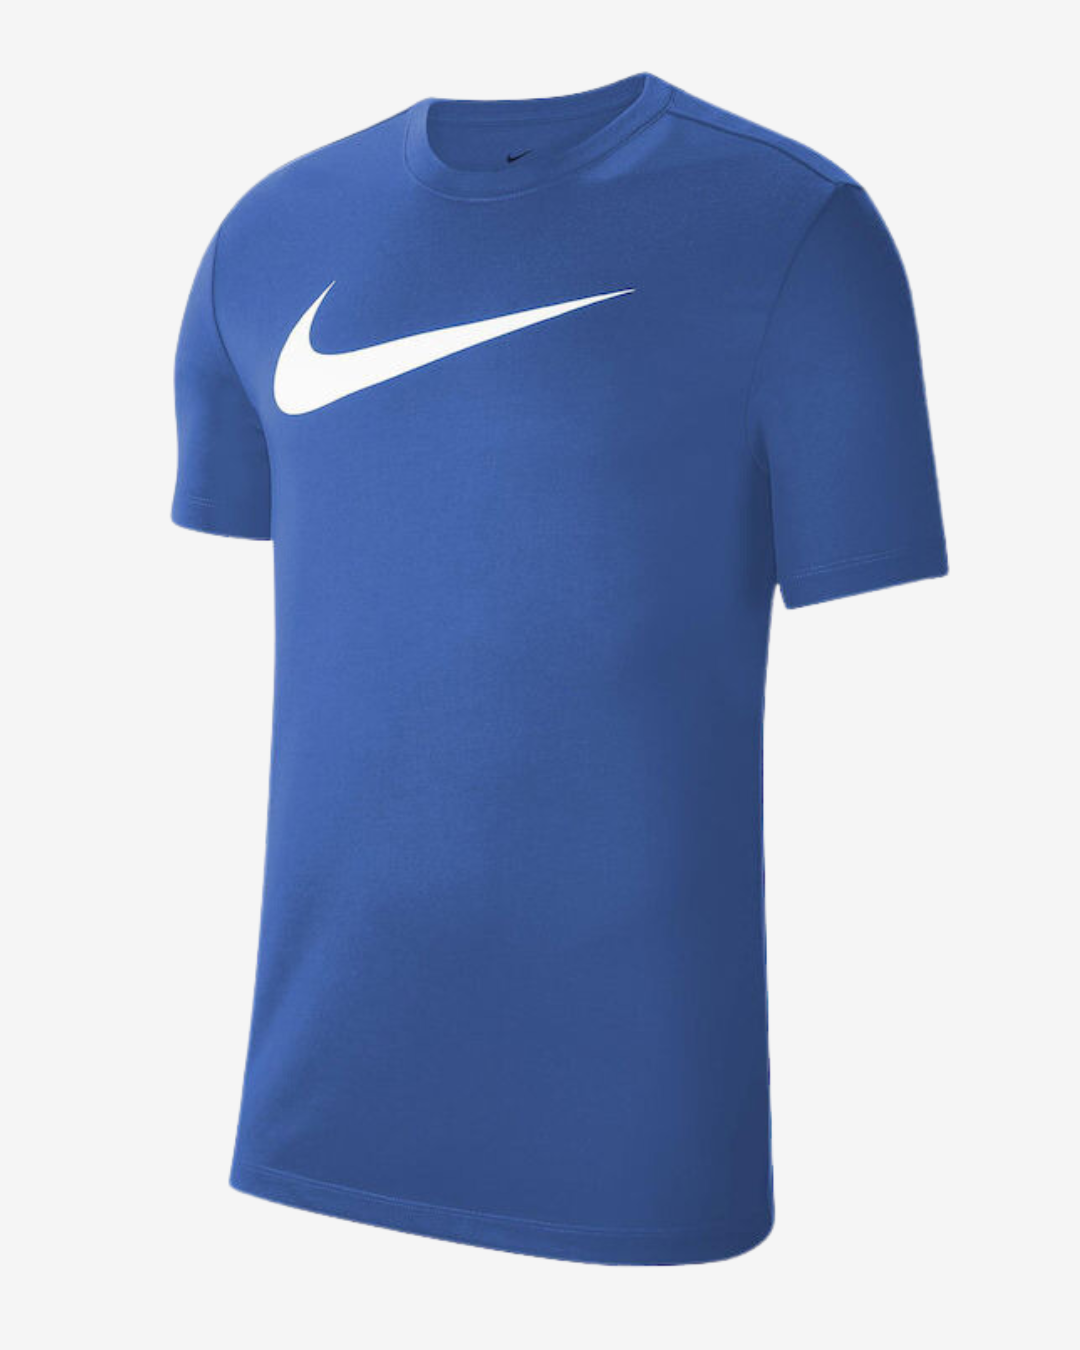 Billede af Nike Dri-fit park 20 t-shirt - Blå - Str. S - Modish.dk